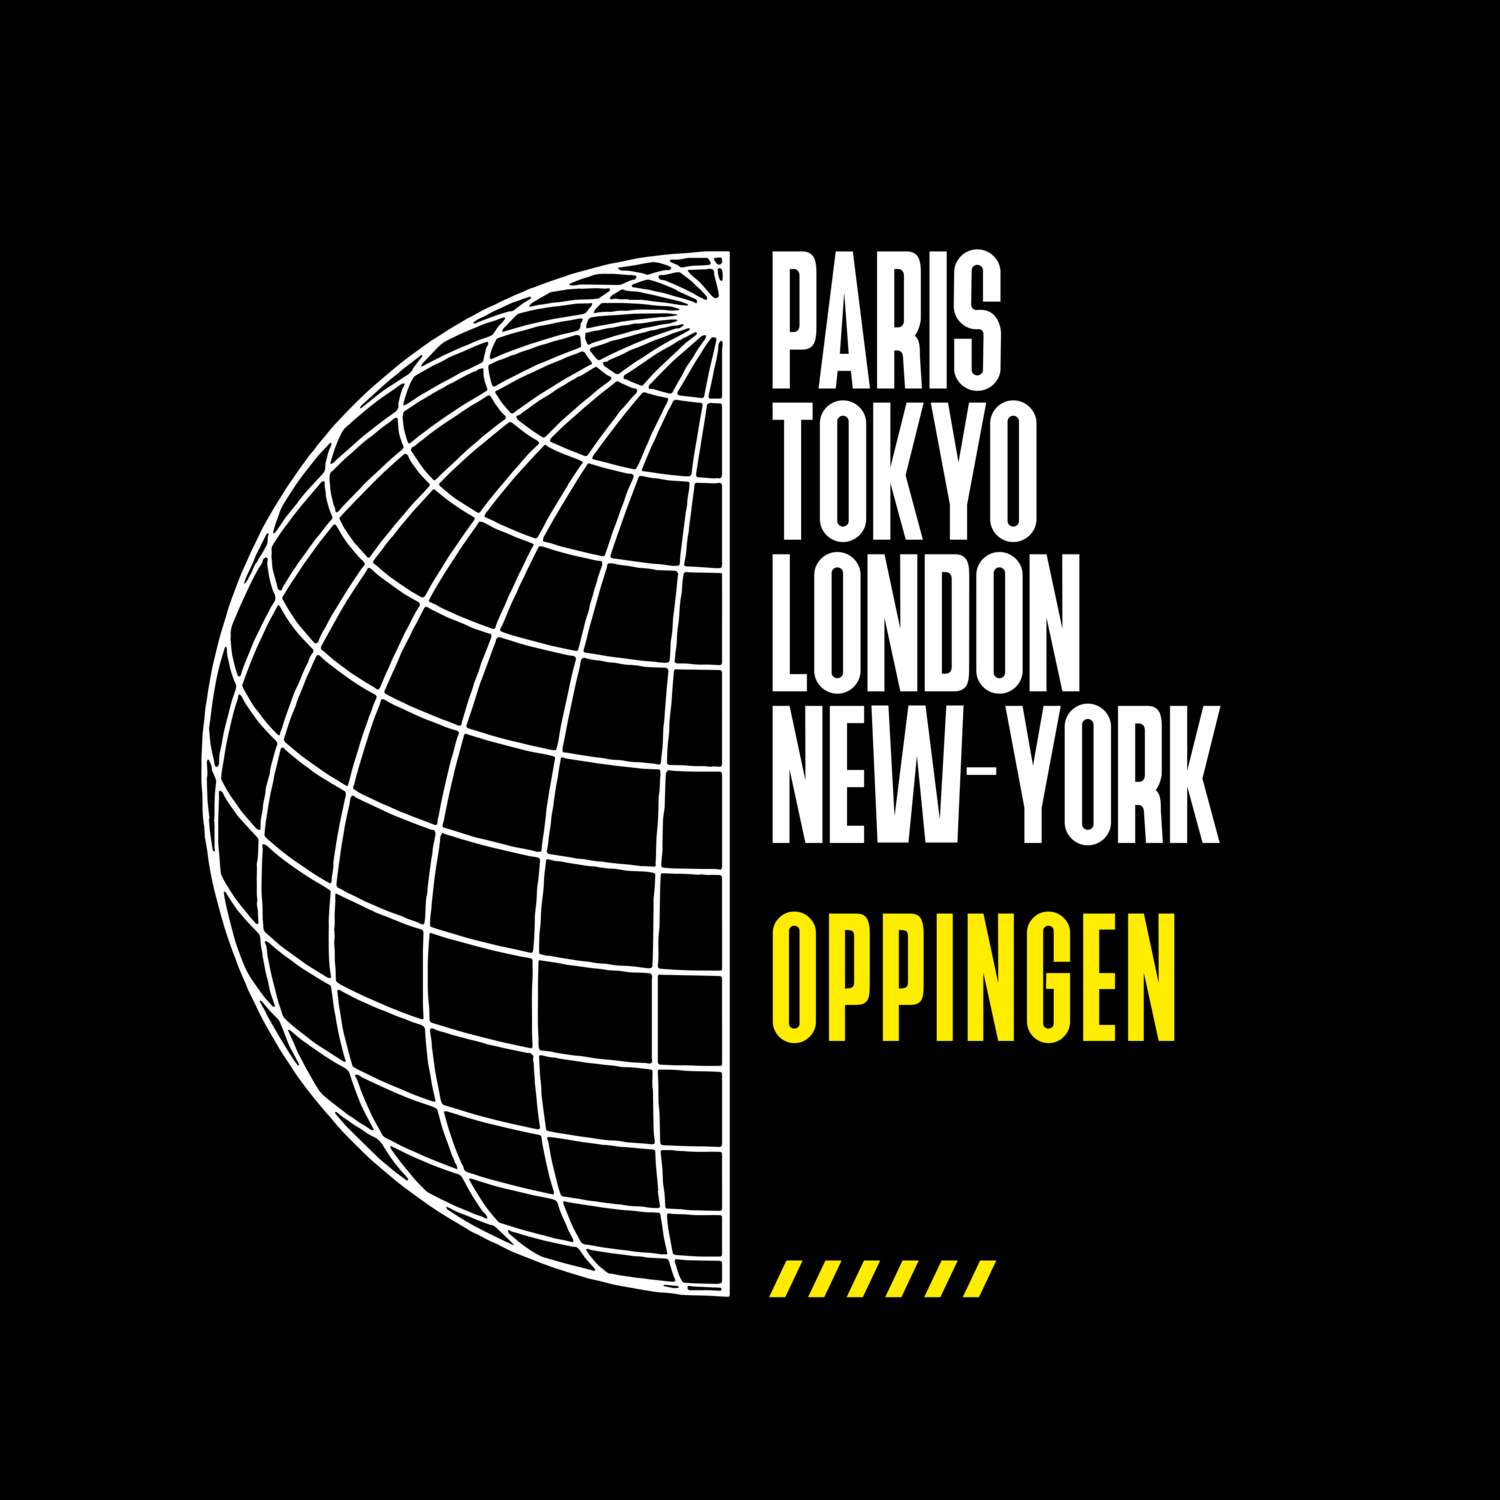 Oppingen T-Shirt »Paris Tokyo London«